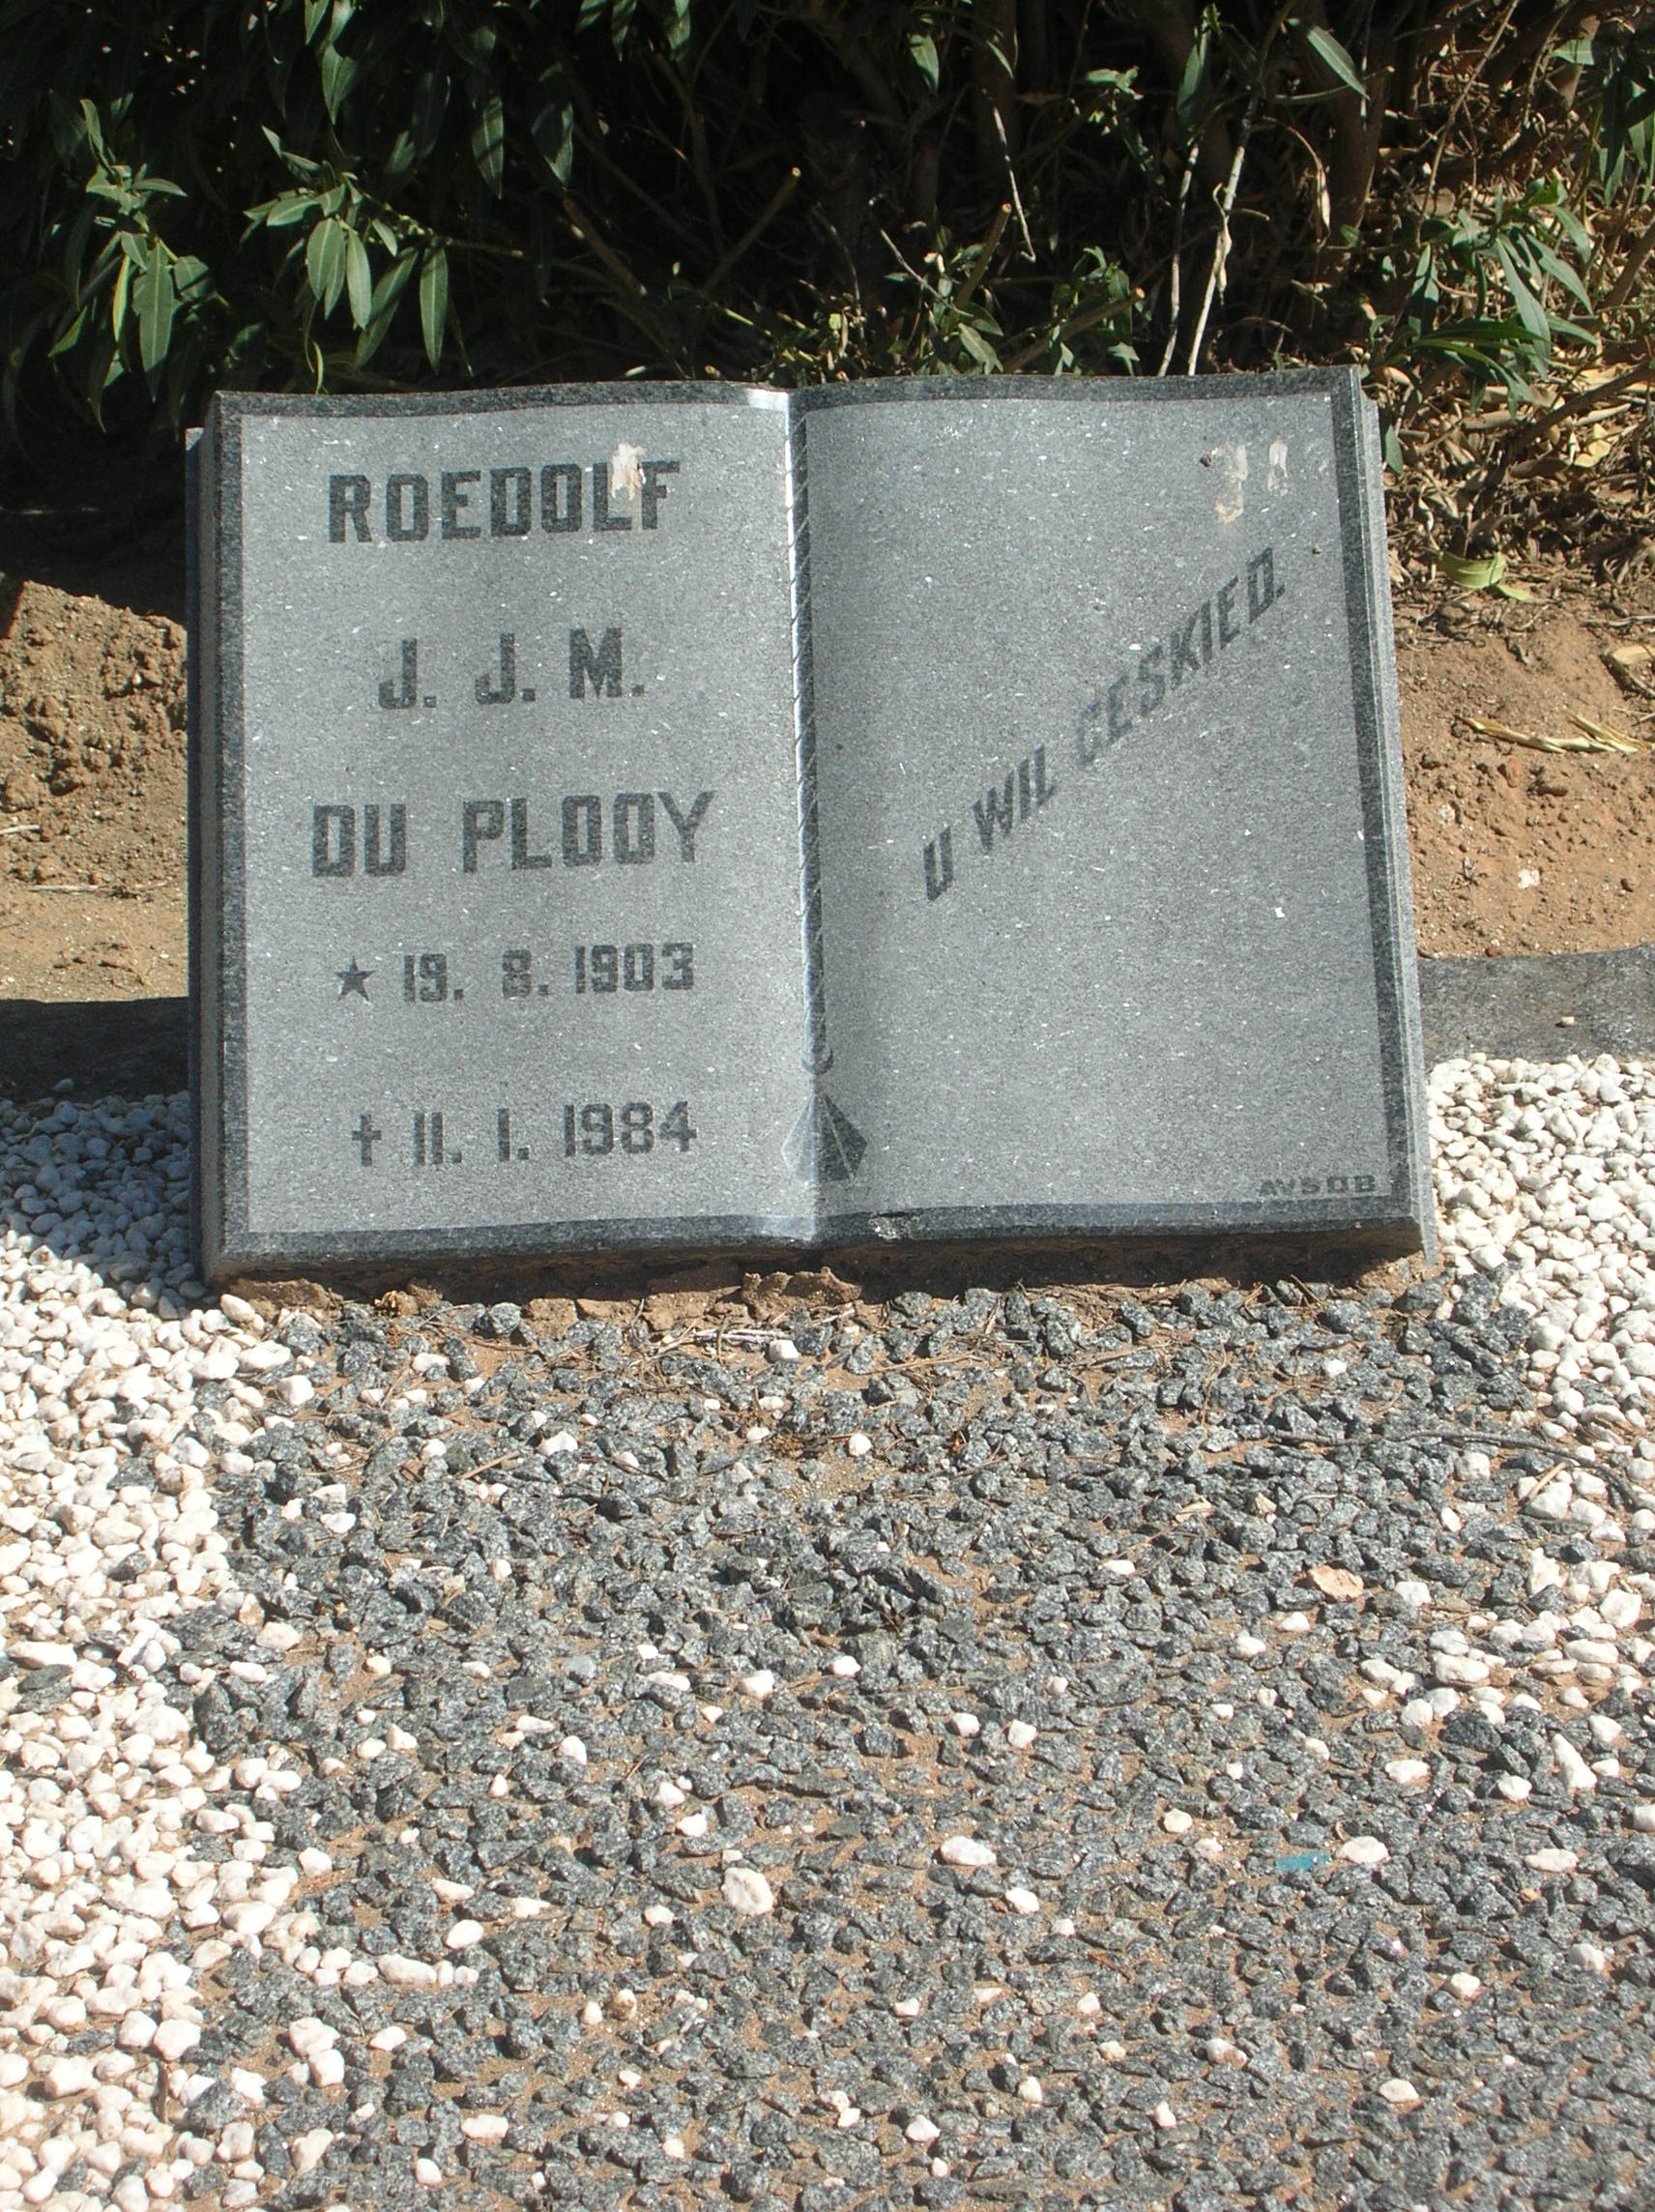 PLOOY Roedolf J.J.M., du 1903-1984